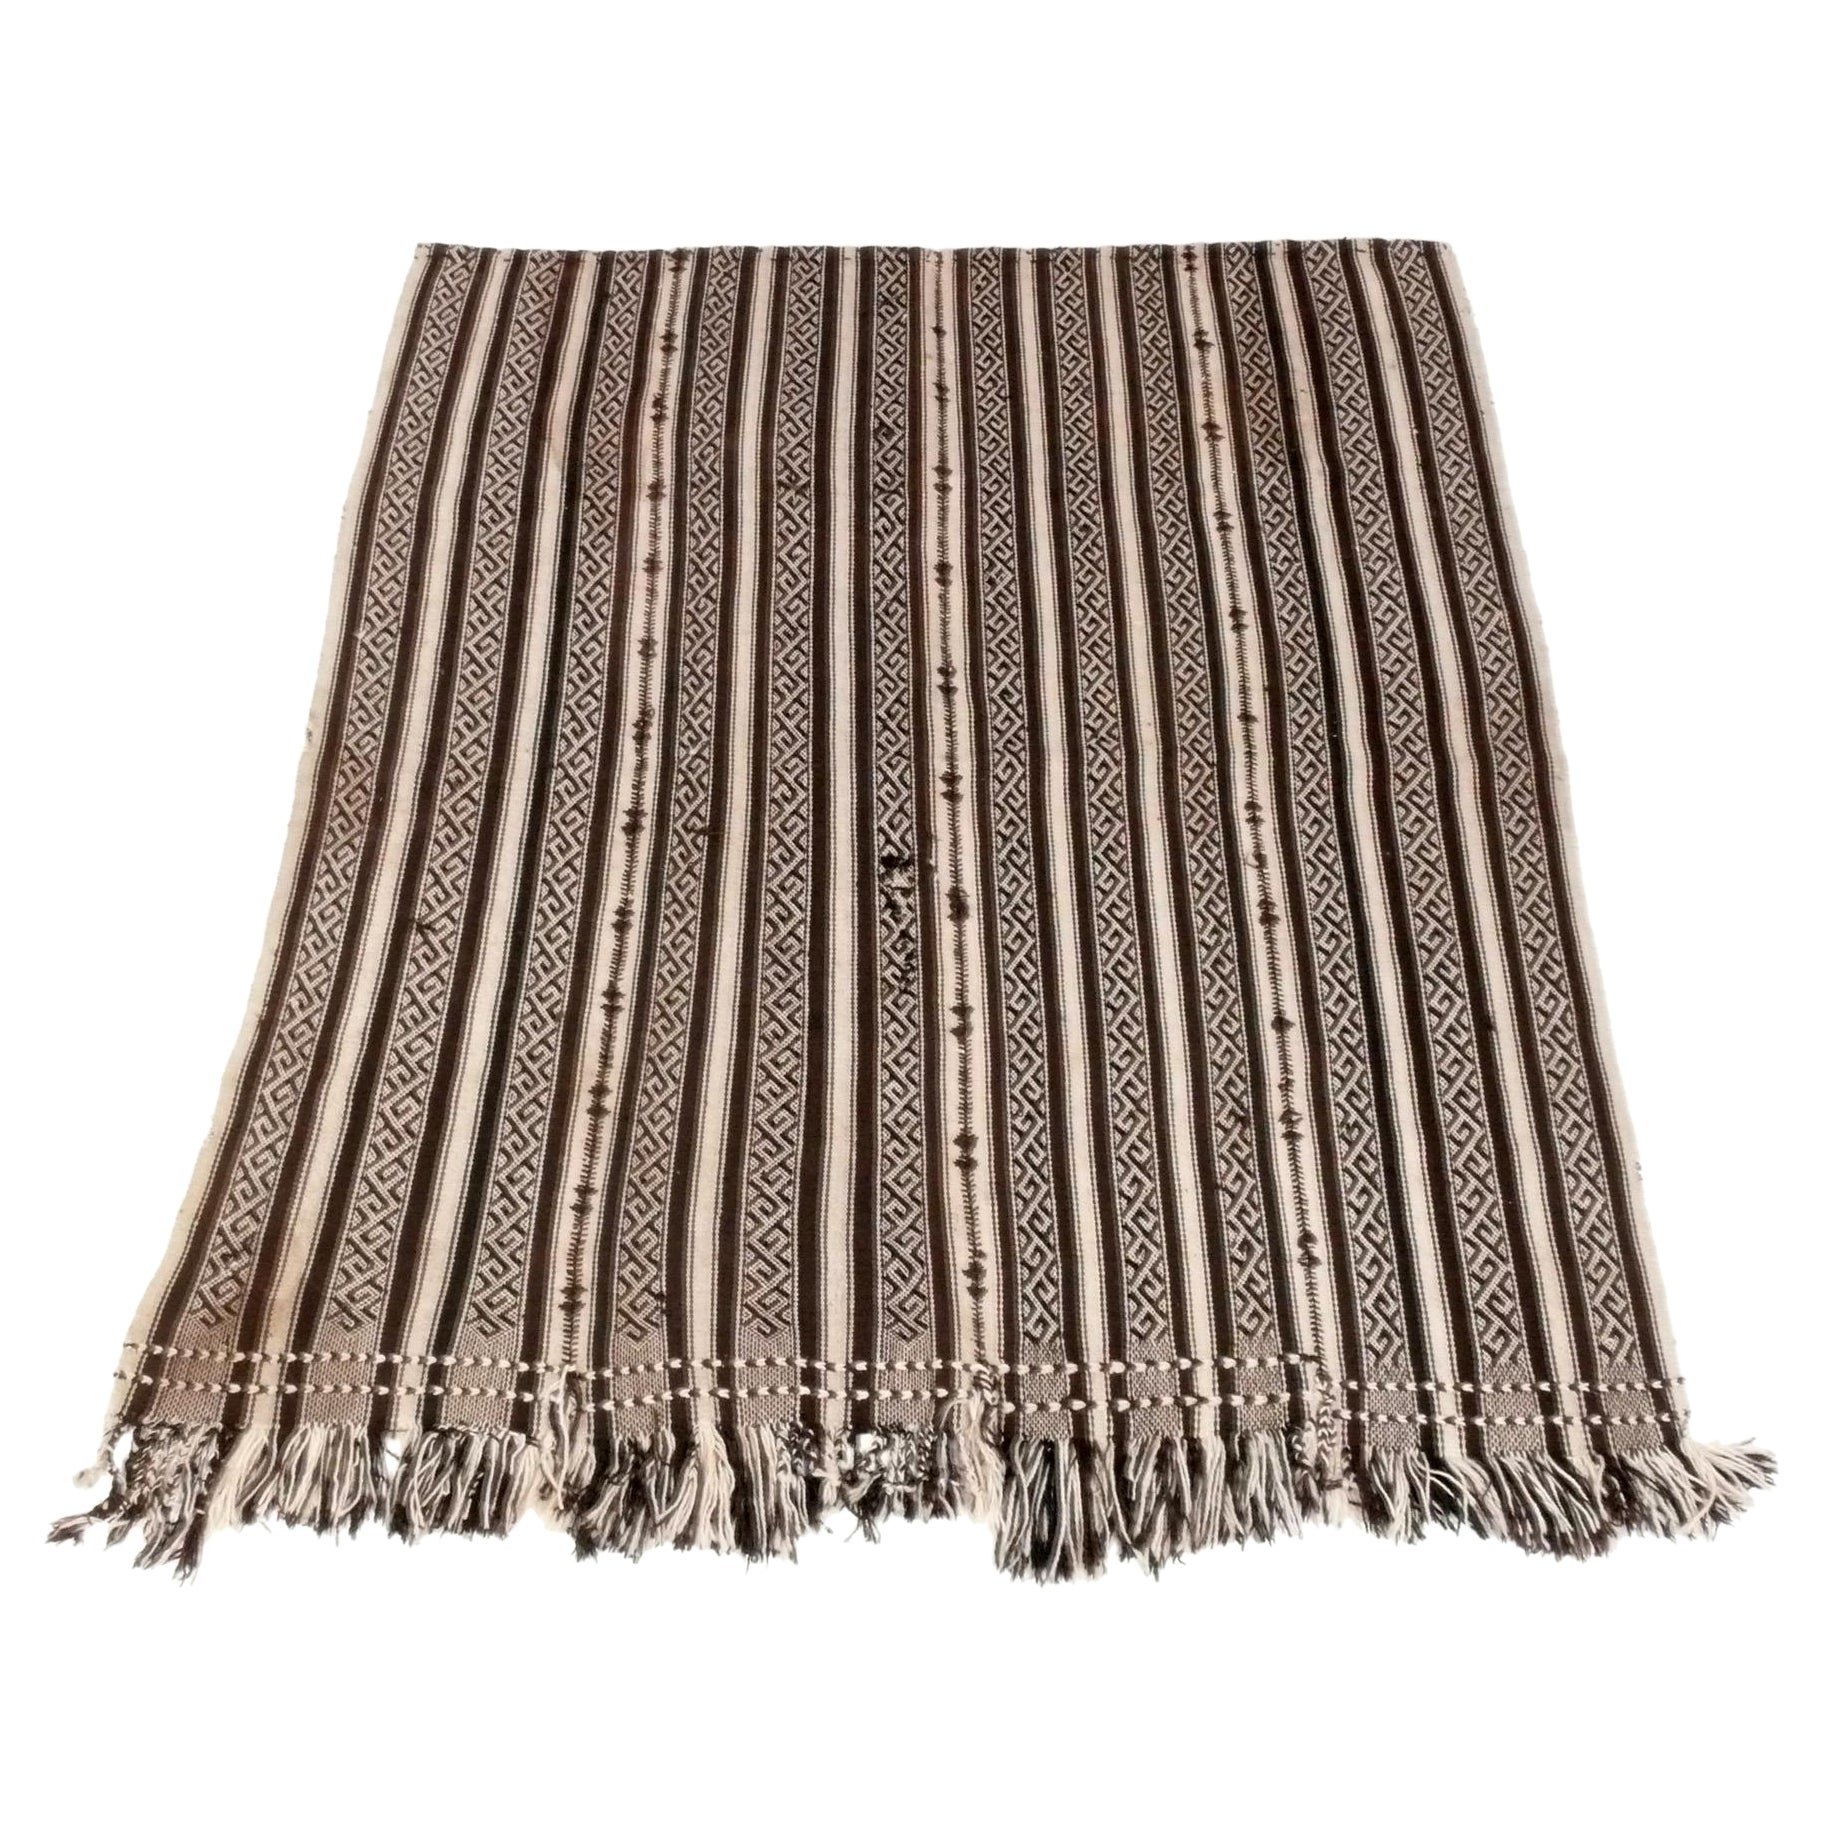 Moroccan Flatweave Wool Rug 69" x 55" Beautiful Striped Pattern 